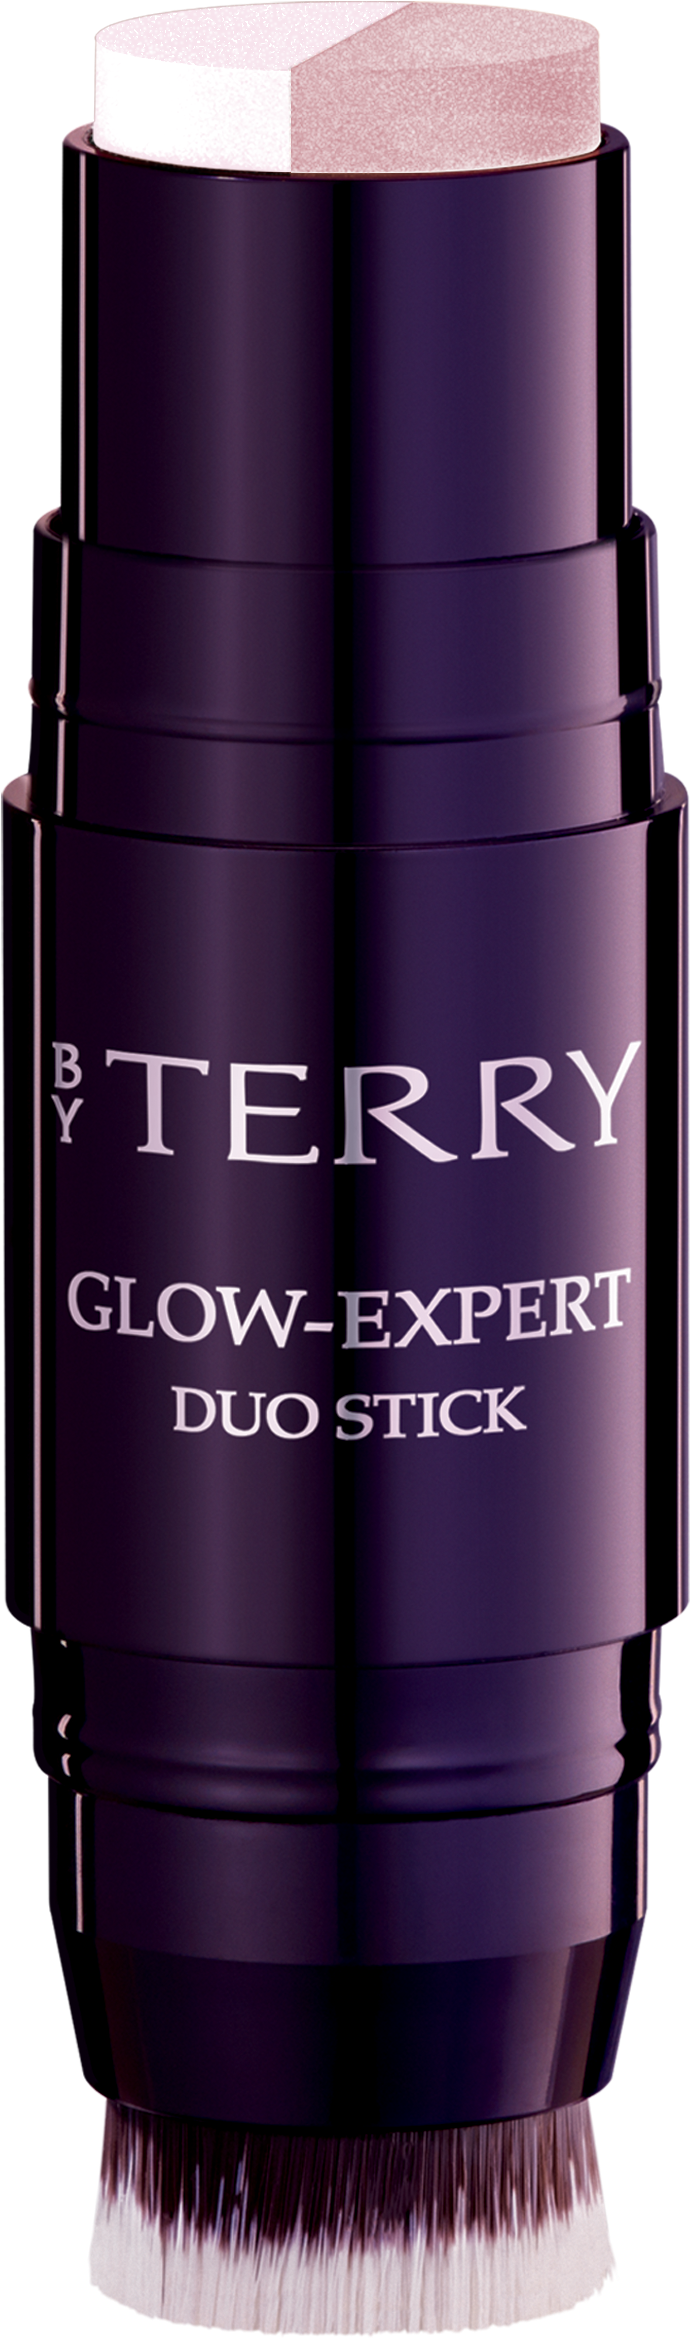 Стик т. By Terry Glow-Expert Duo Stick. By Terry Glow Expert Duo Stick Copper Coffee. By Terry Glow Expert дуо стик. 3 Peachy Petal by Terry Glow Expert Duo Stick.